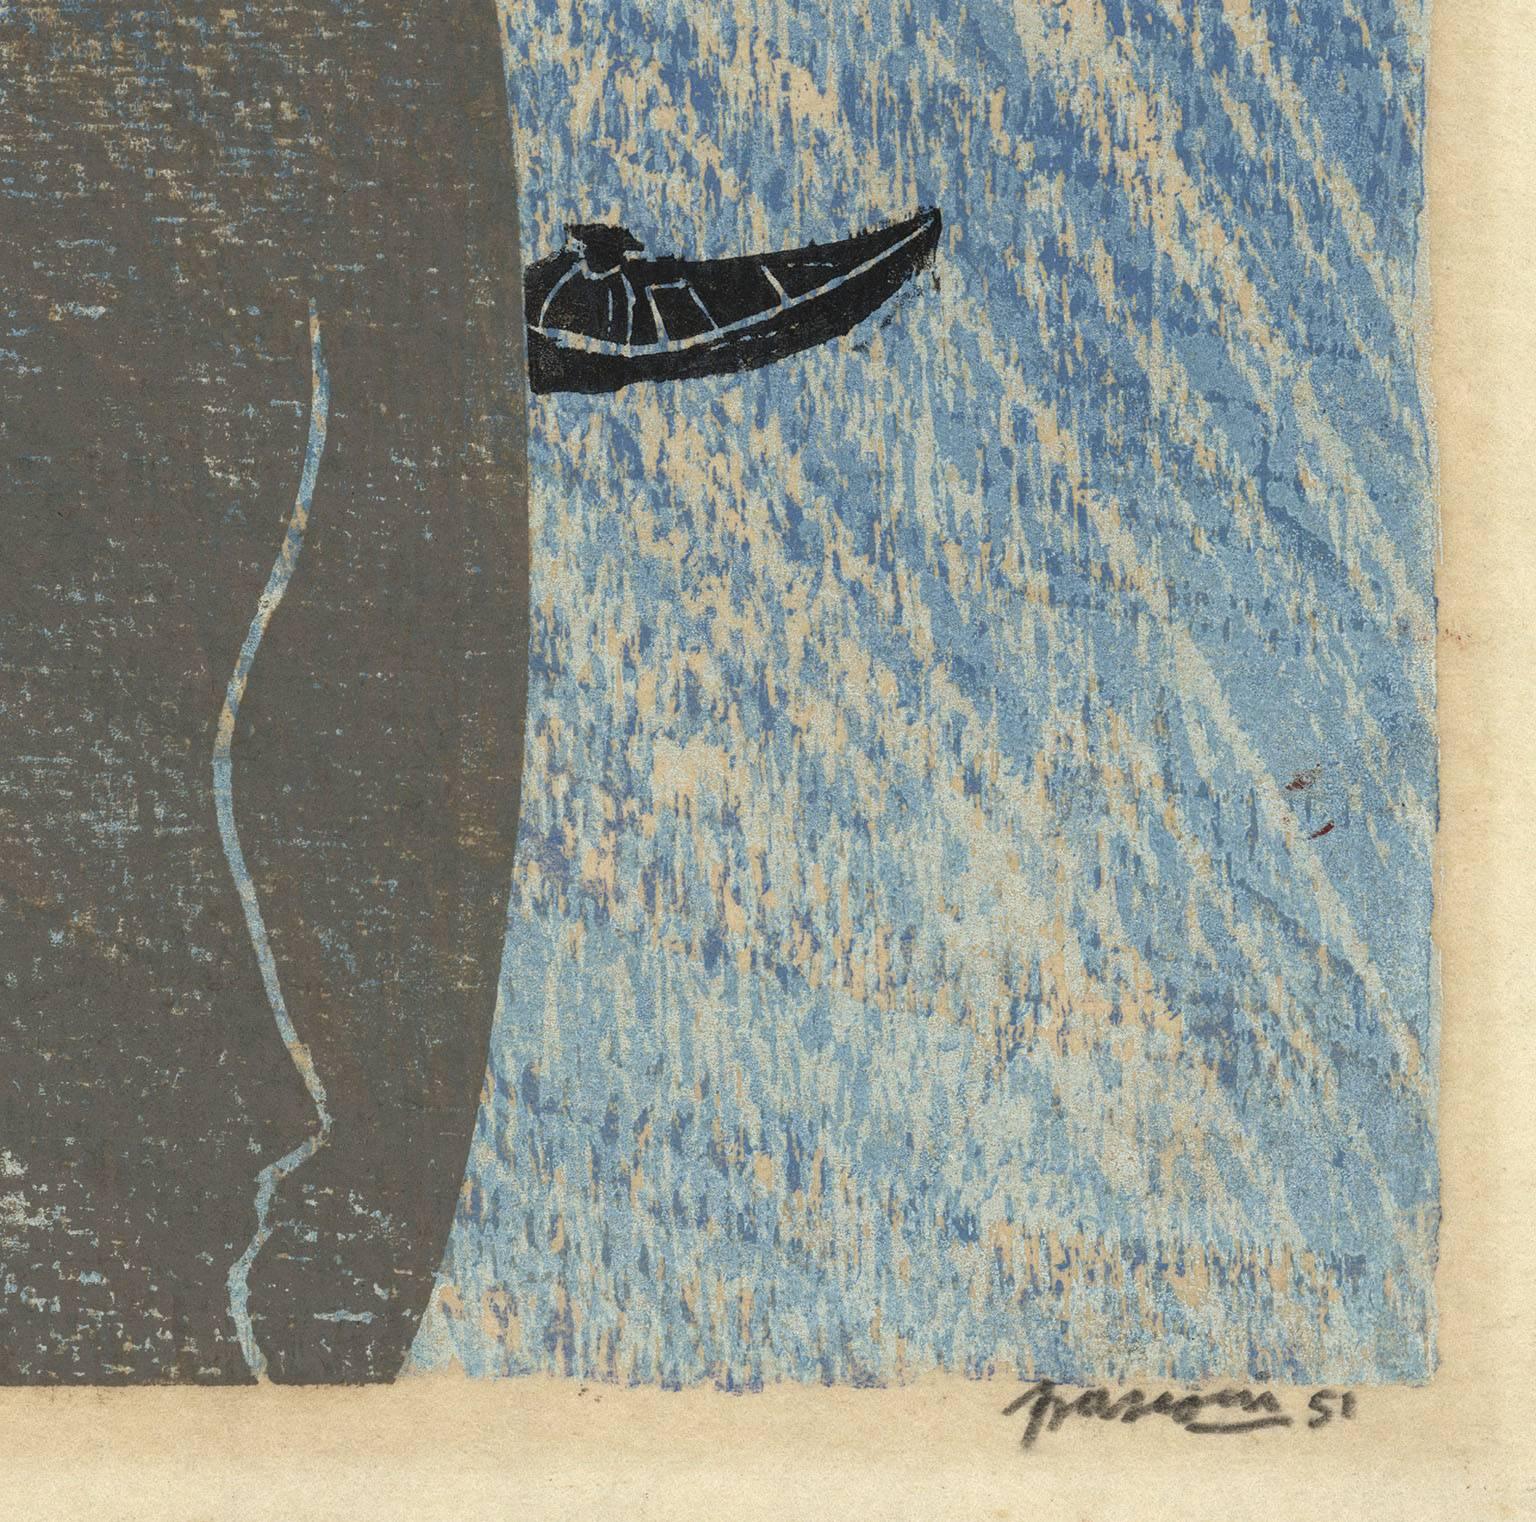 Monterey Fischer [und] Monterey Fischer 2. – Print von Antonio Frasconi